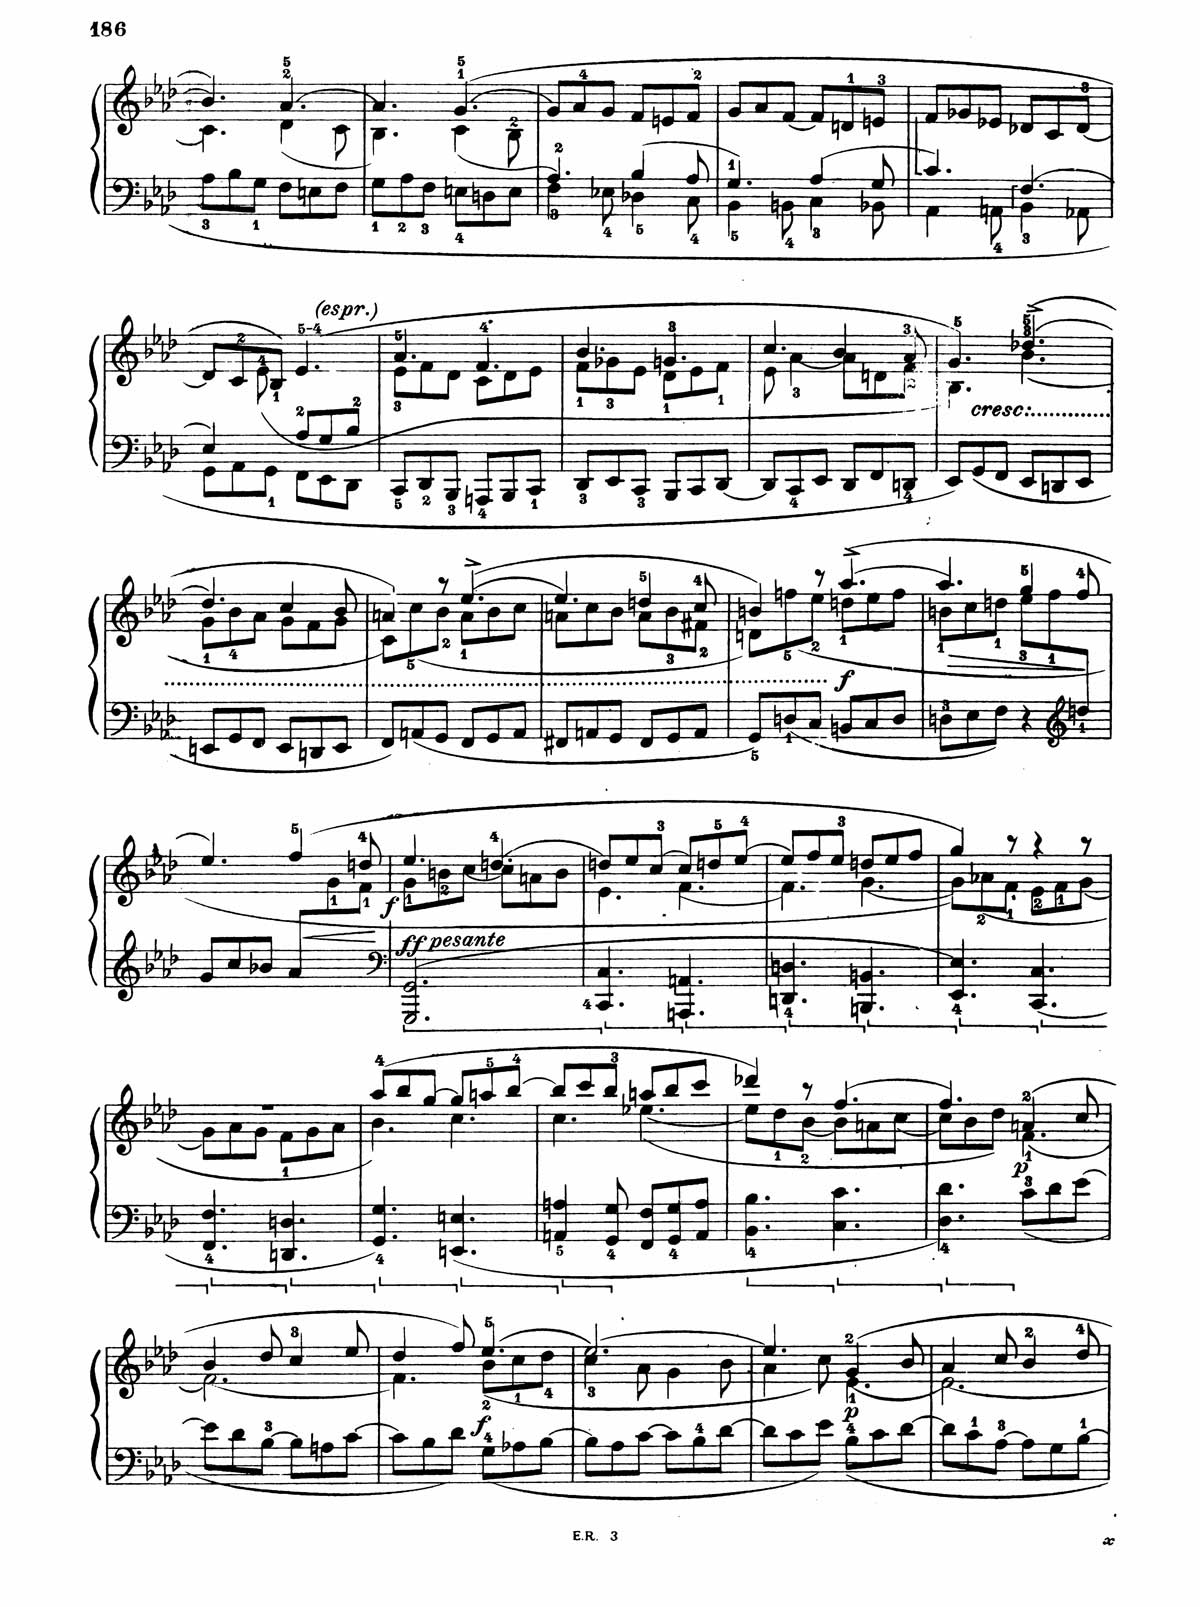 Beethoven Piano Sonata 31-17 sheet music